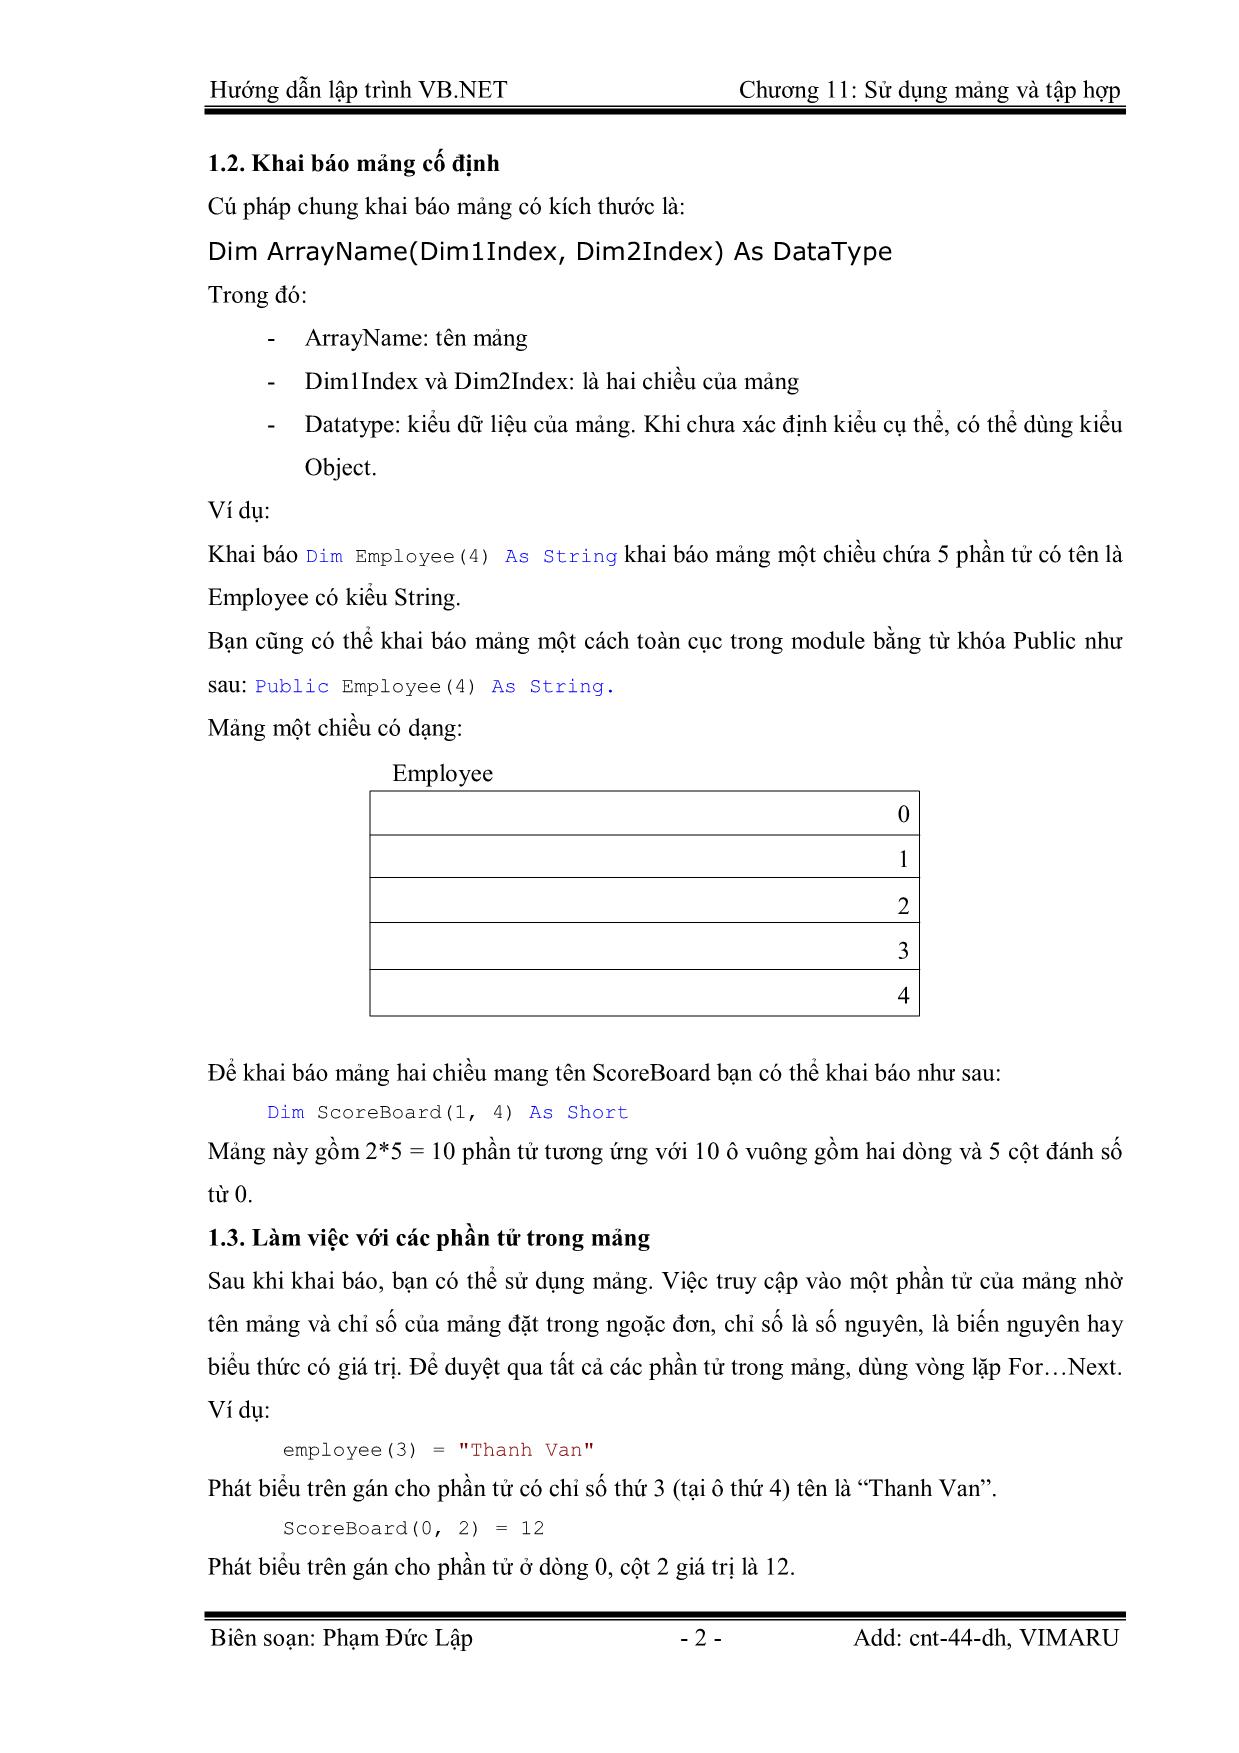 Giáo trình Hướng dẫn lập trình VB.NET - Chương 11: Sử dụng mảng và tập hợp - Phạm Đức Lập trang 2